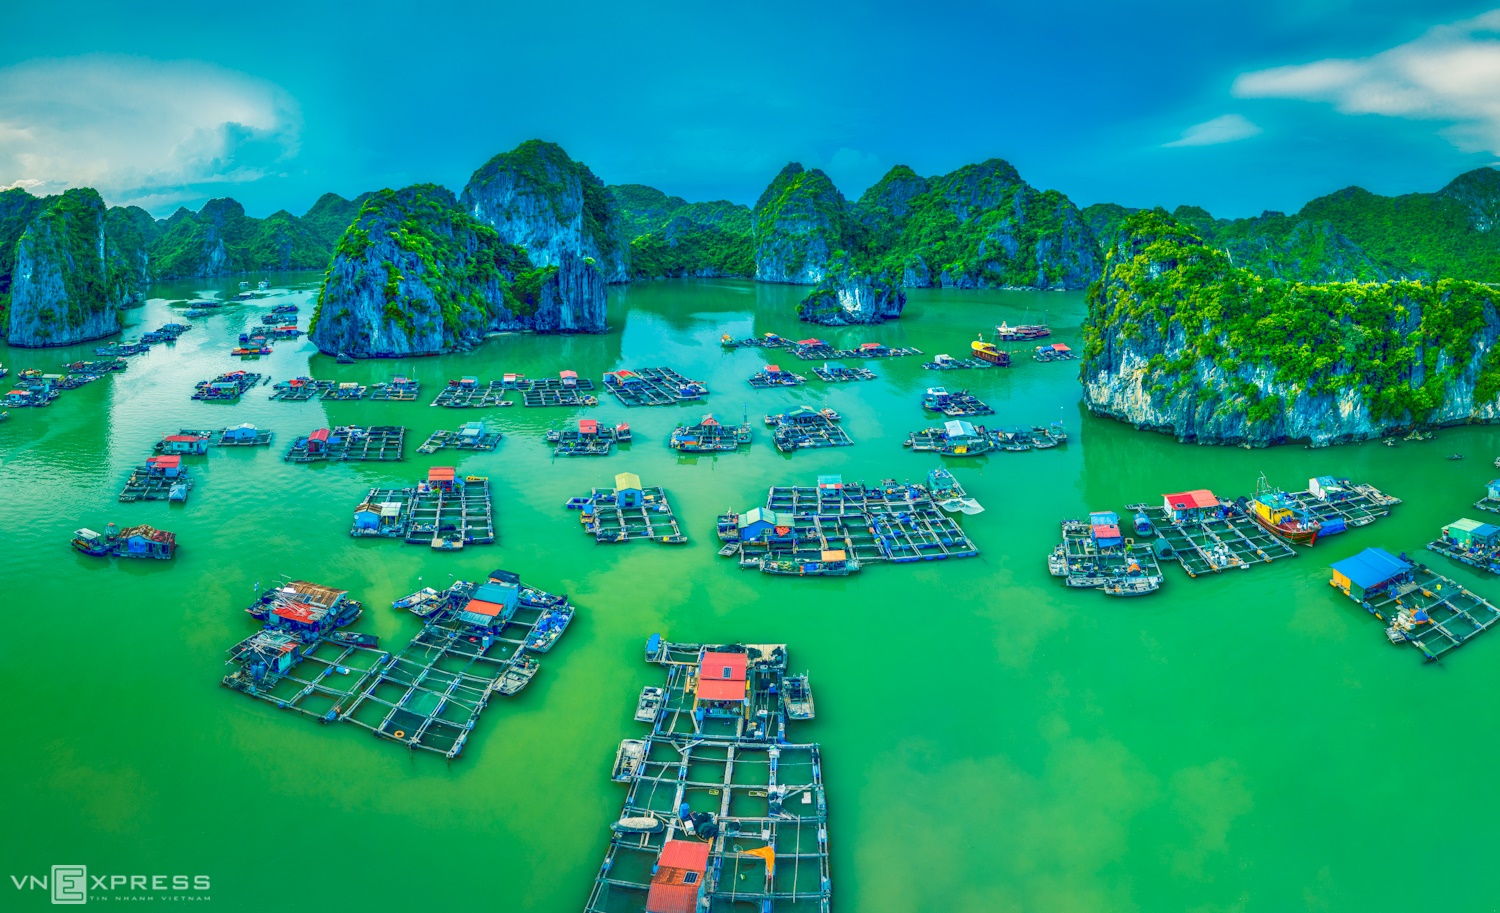 В рыбацкой деревне Кай Бео можно увидеть десятки домов, которые плавают на зеленой прозрачной воде. Фото: Pham Huy Trung